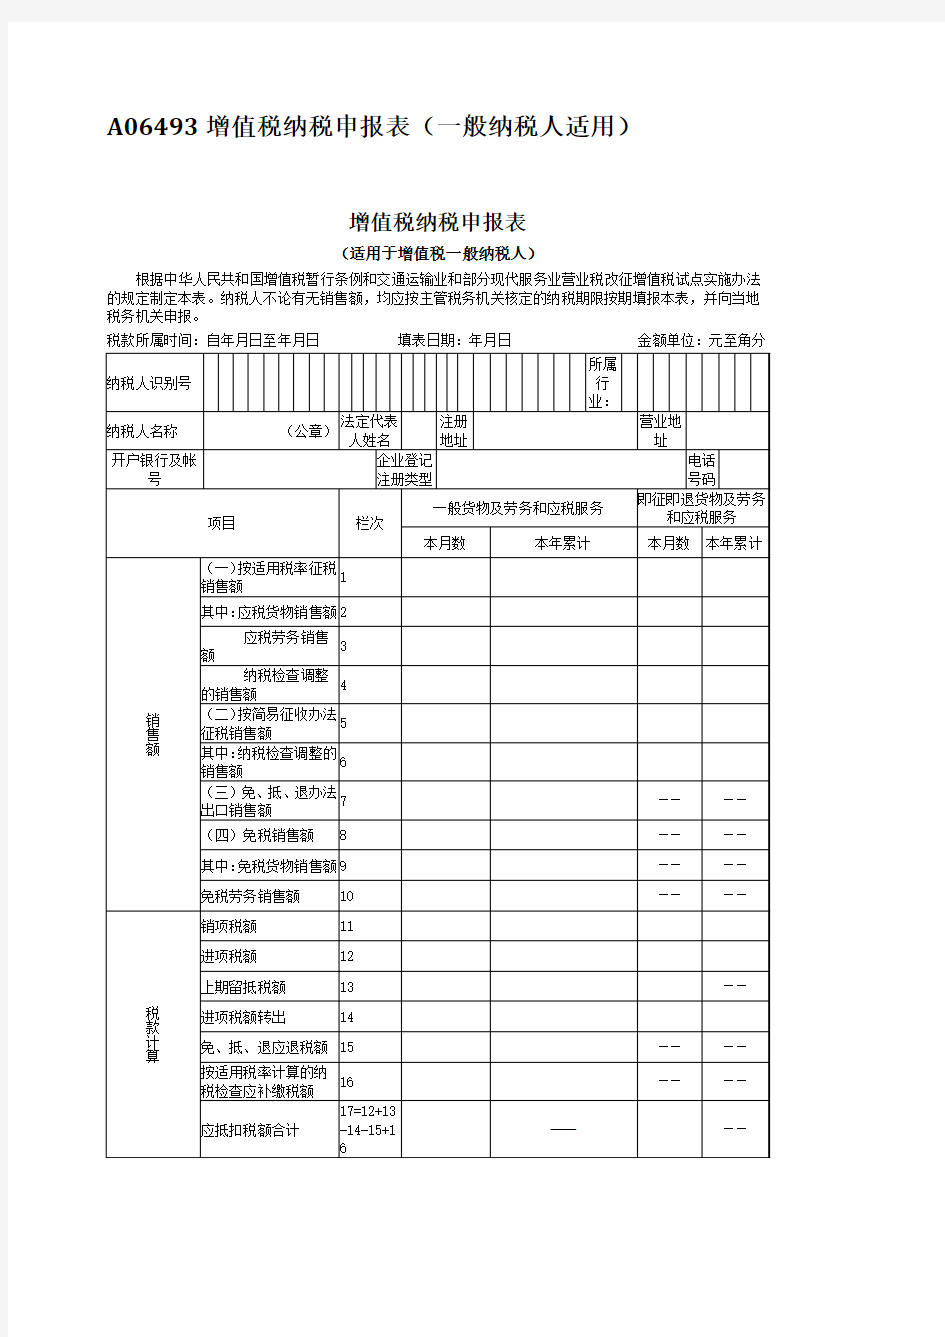 内蒙古呼和浩特国家税务局增值税纳税申报表(一般纳税人适用)